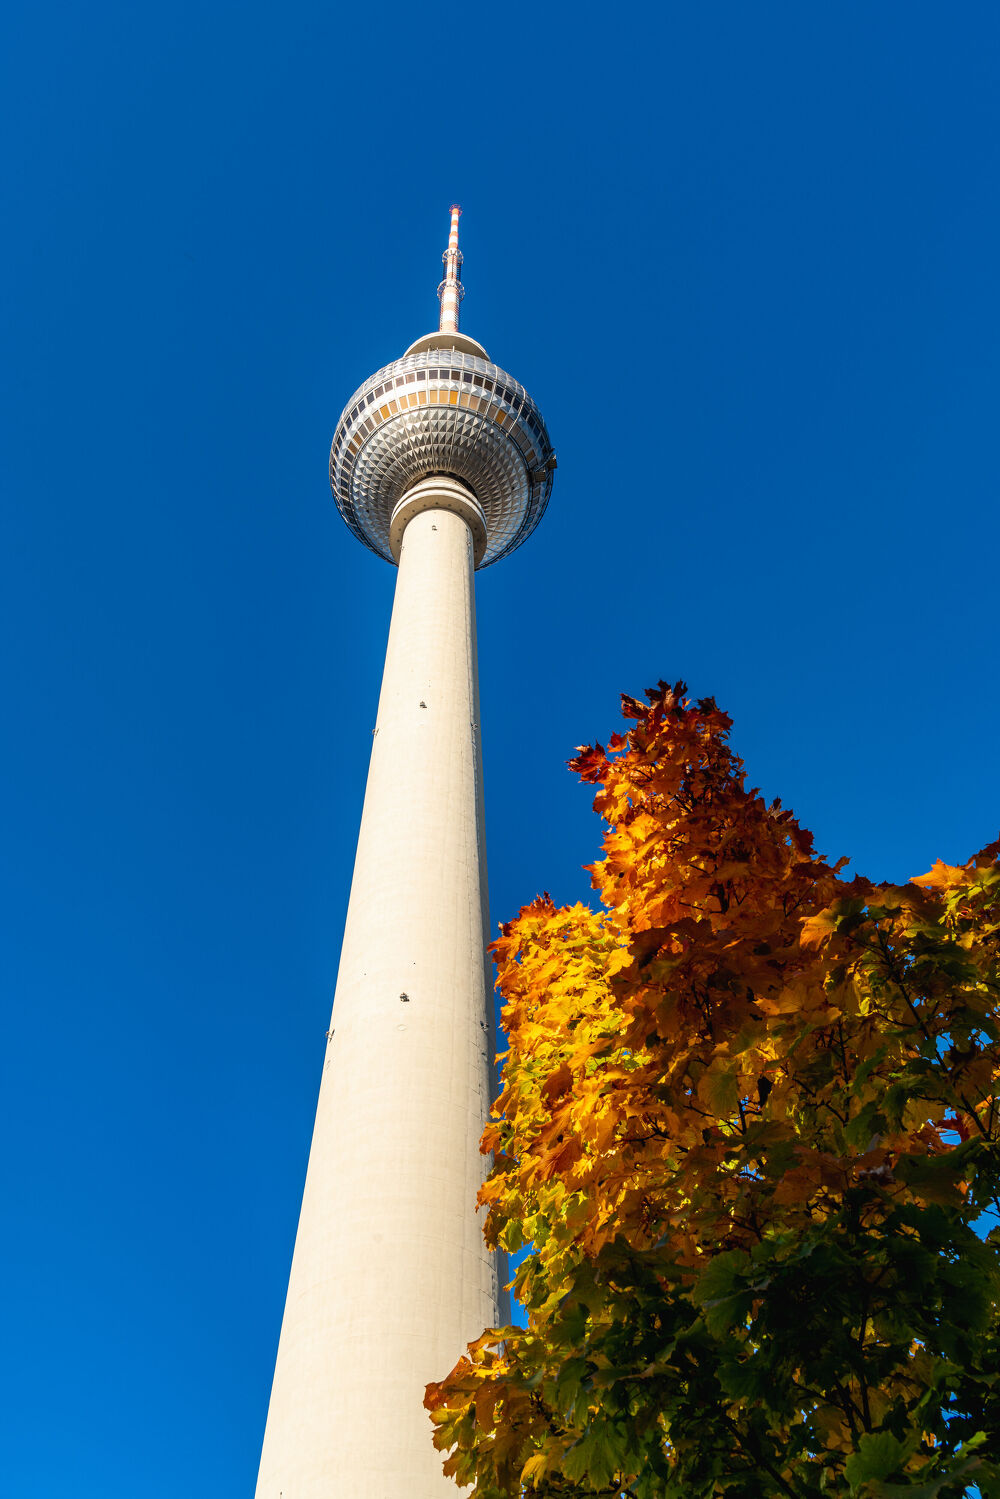 Bild mit Herbst, Tageslicht, Baum, Fernsehturm, Berliner Fernsehturm, Laubbaum, Blauer Himmel, Froschperspektive, sonnig